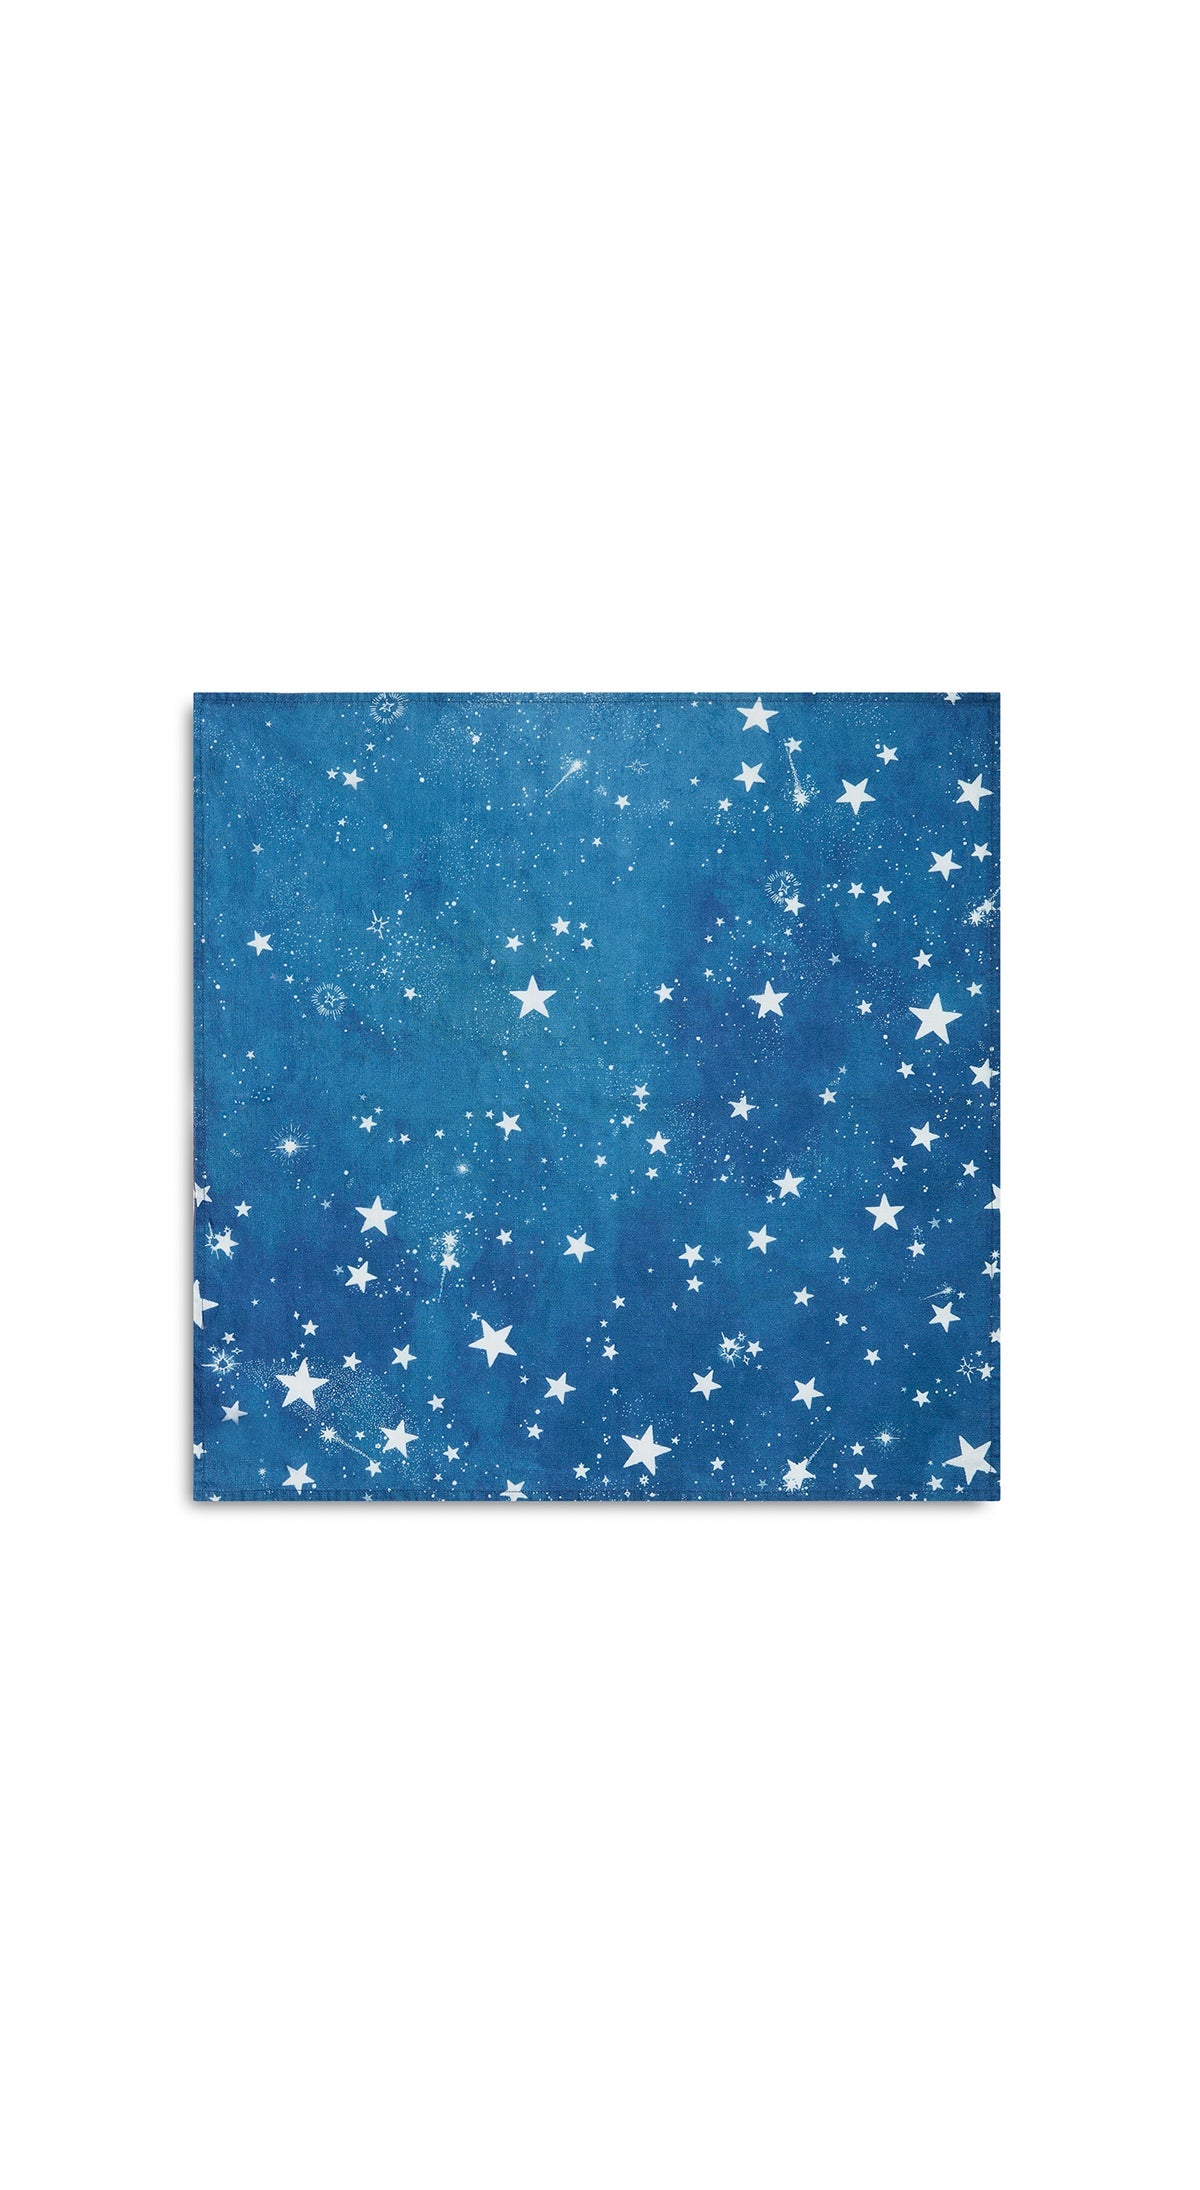 Celestial Stars Linen Napkin in Blue, 50x50cm